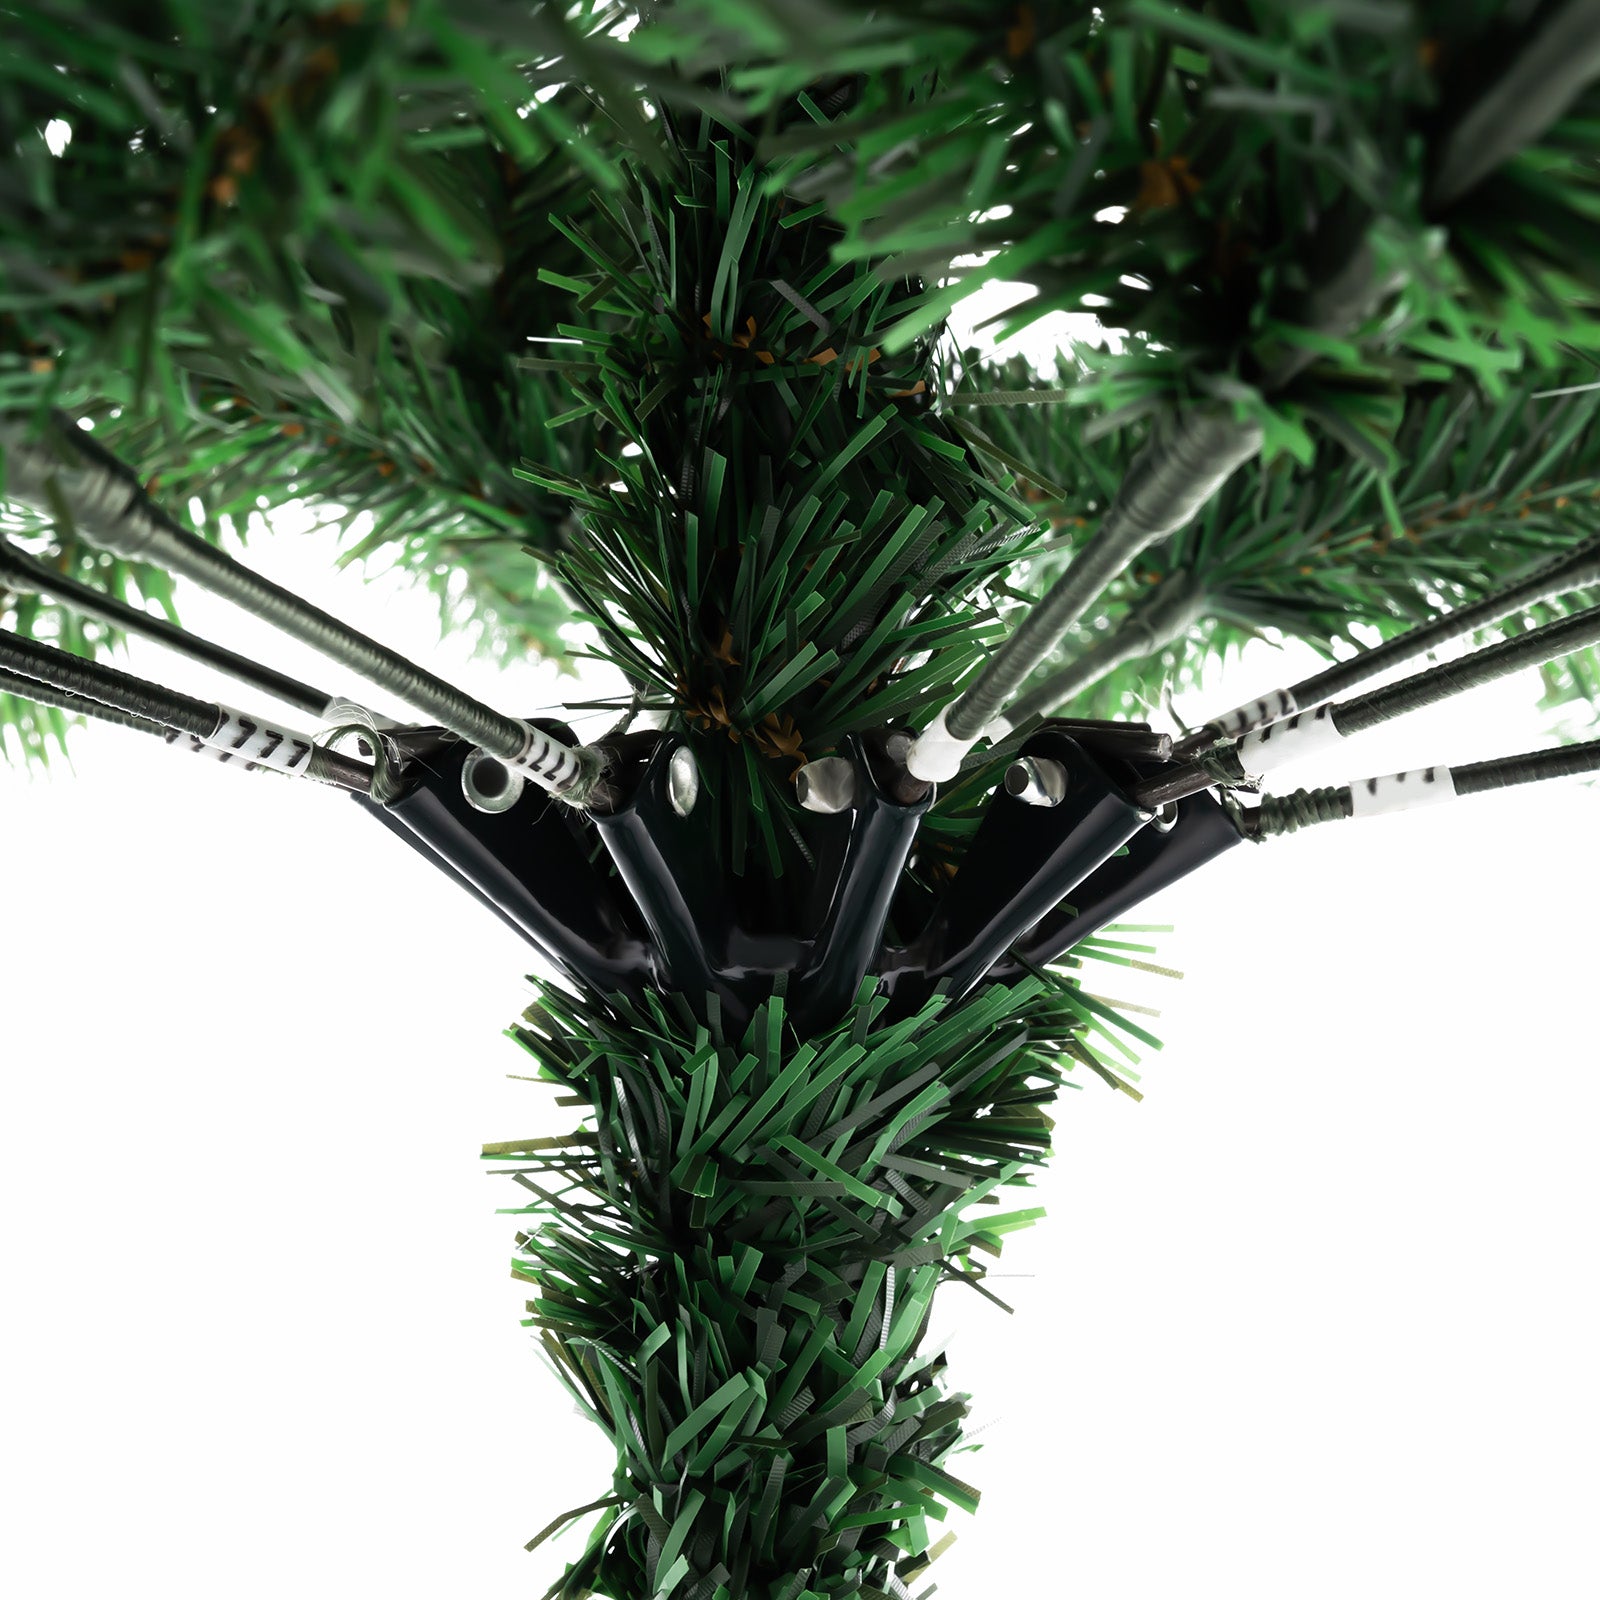 210 cm Albero di Natale Artificiale Decorazione Natalizia in PVC, per Appartamenti, Matrimoni, Ristoranti, Centri Commerciali